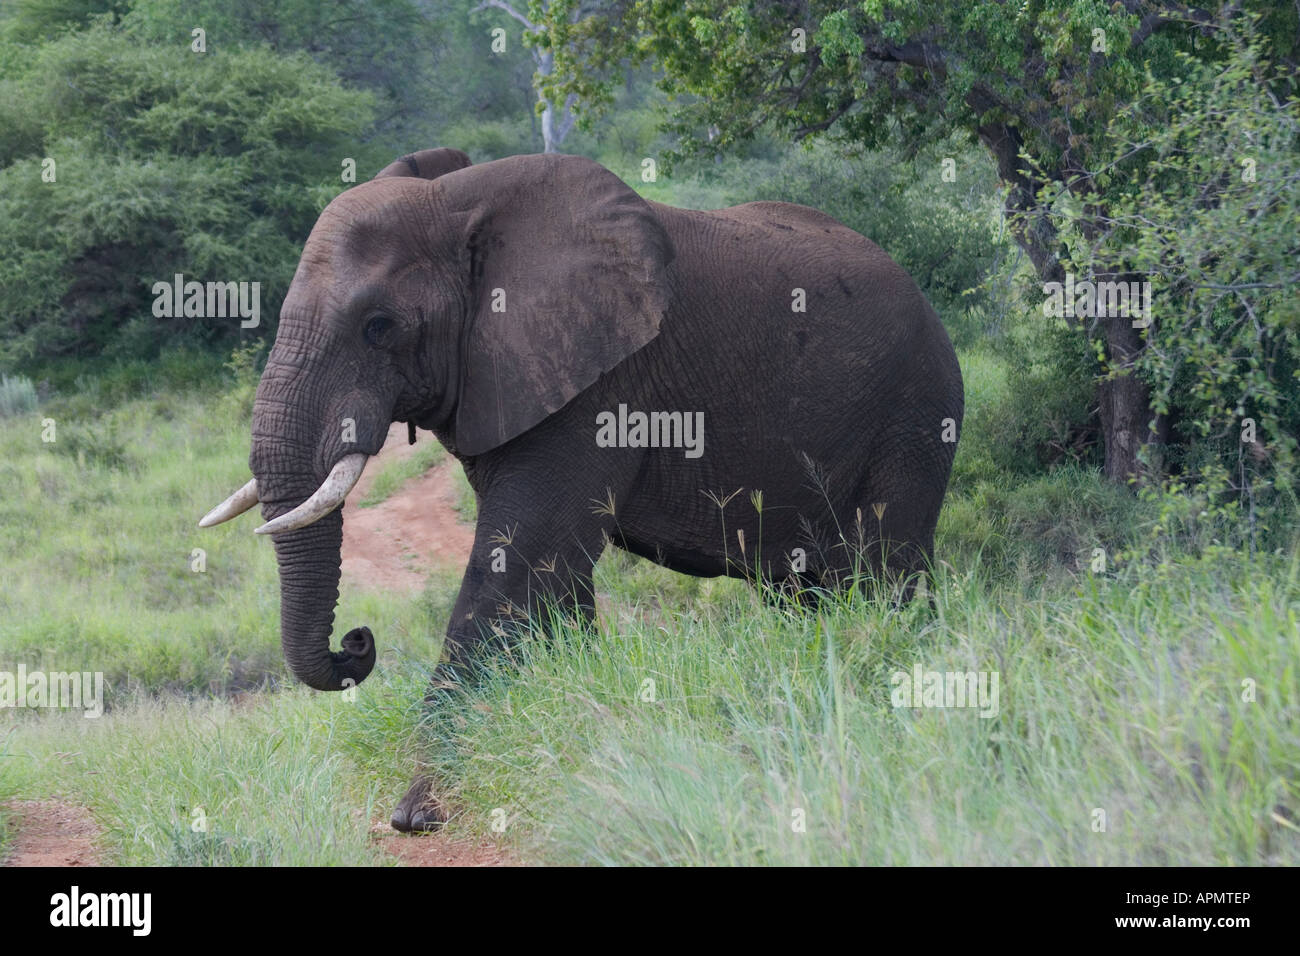 Afrikanische Elefanten pflanzenfressenden und größten lebenden Säugetiere in der Provinz Limpopo in Südafrika sowohl Männchen und Weibchen Stoßzähne Stockfoto